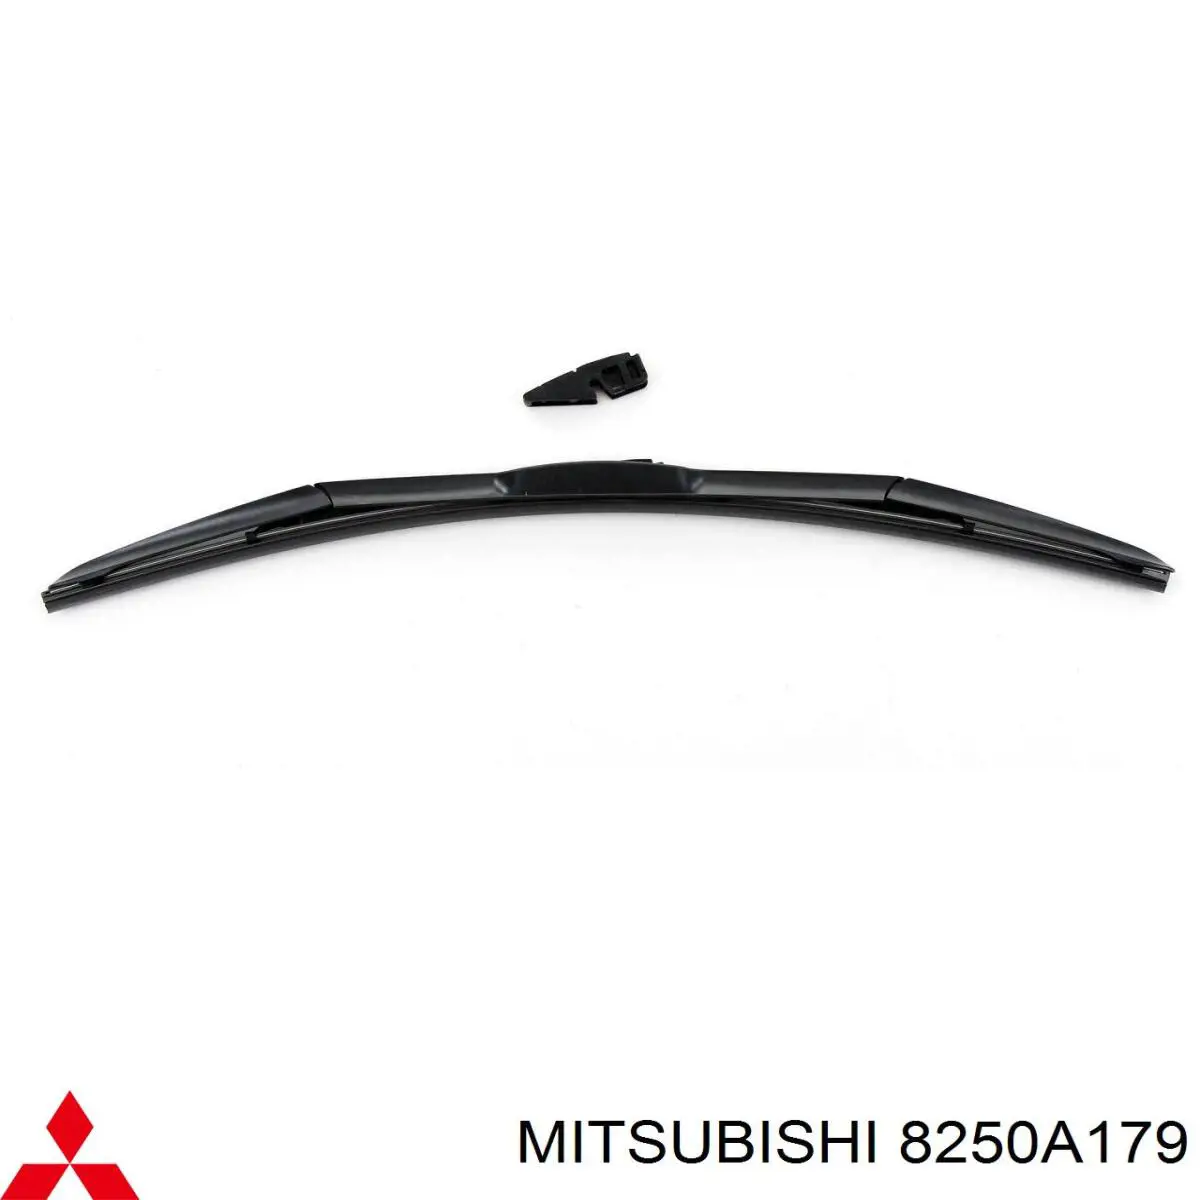 8250A179 Mitsubishi резинка щетки стеклоочистителя водительская